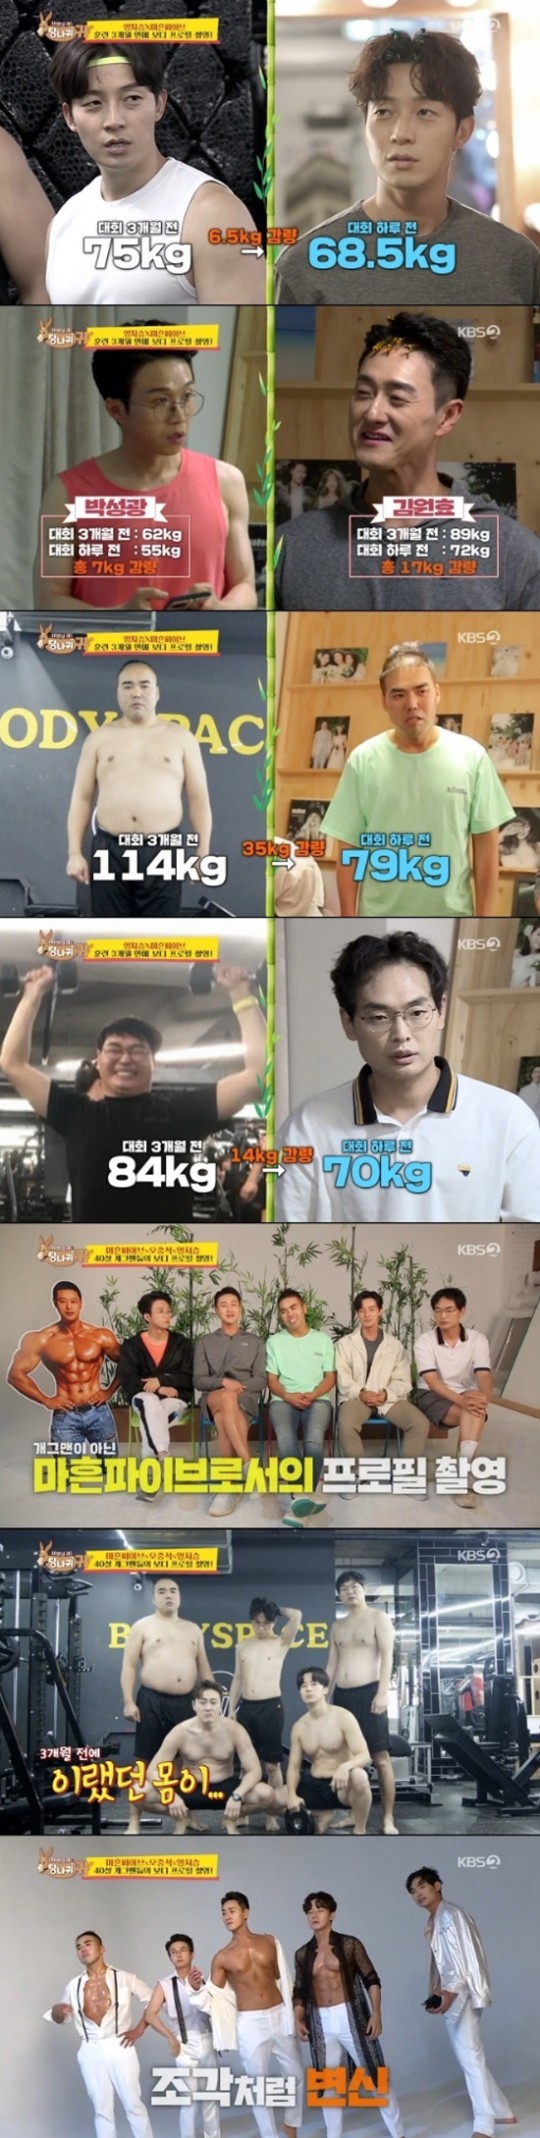 사진=KBS2 '사장님 귀는 당나귀 귀' 방송캡처